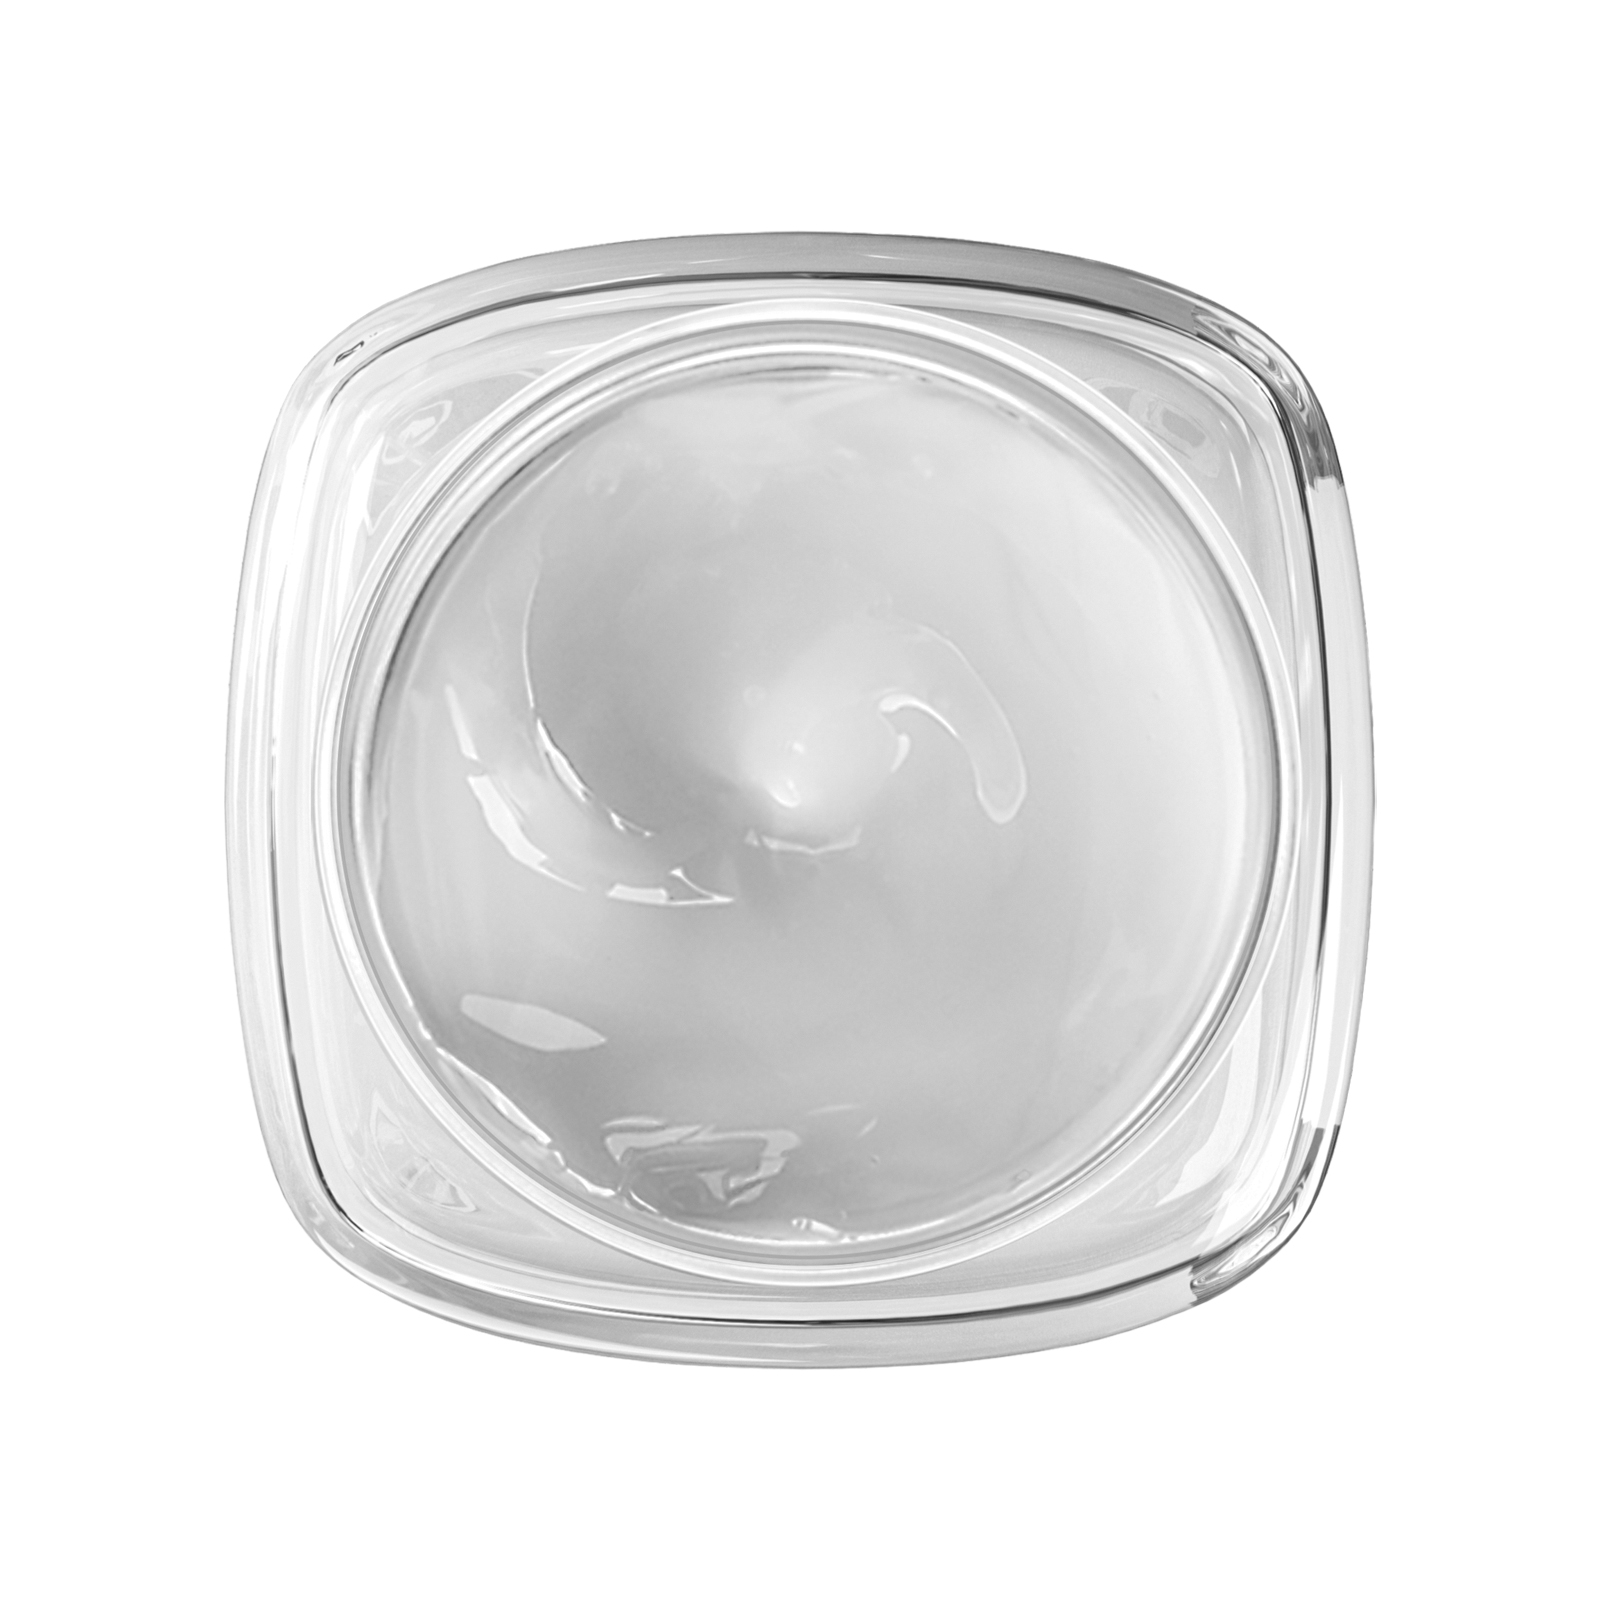 Revitalift Ácido hialurónico gel crema 27015, UNICO, hi-res